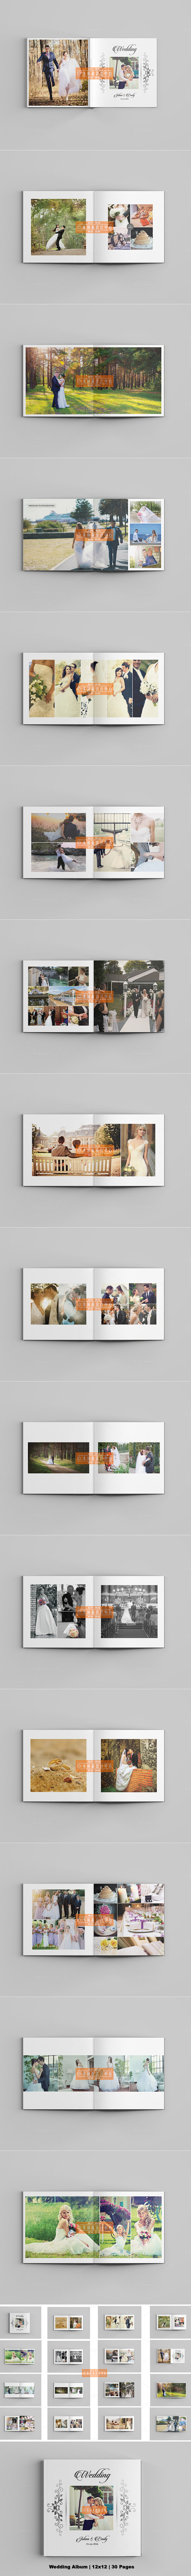 psd分层排版模版 国外婚礼摄影画册相册...